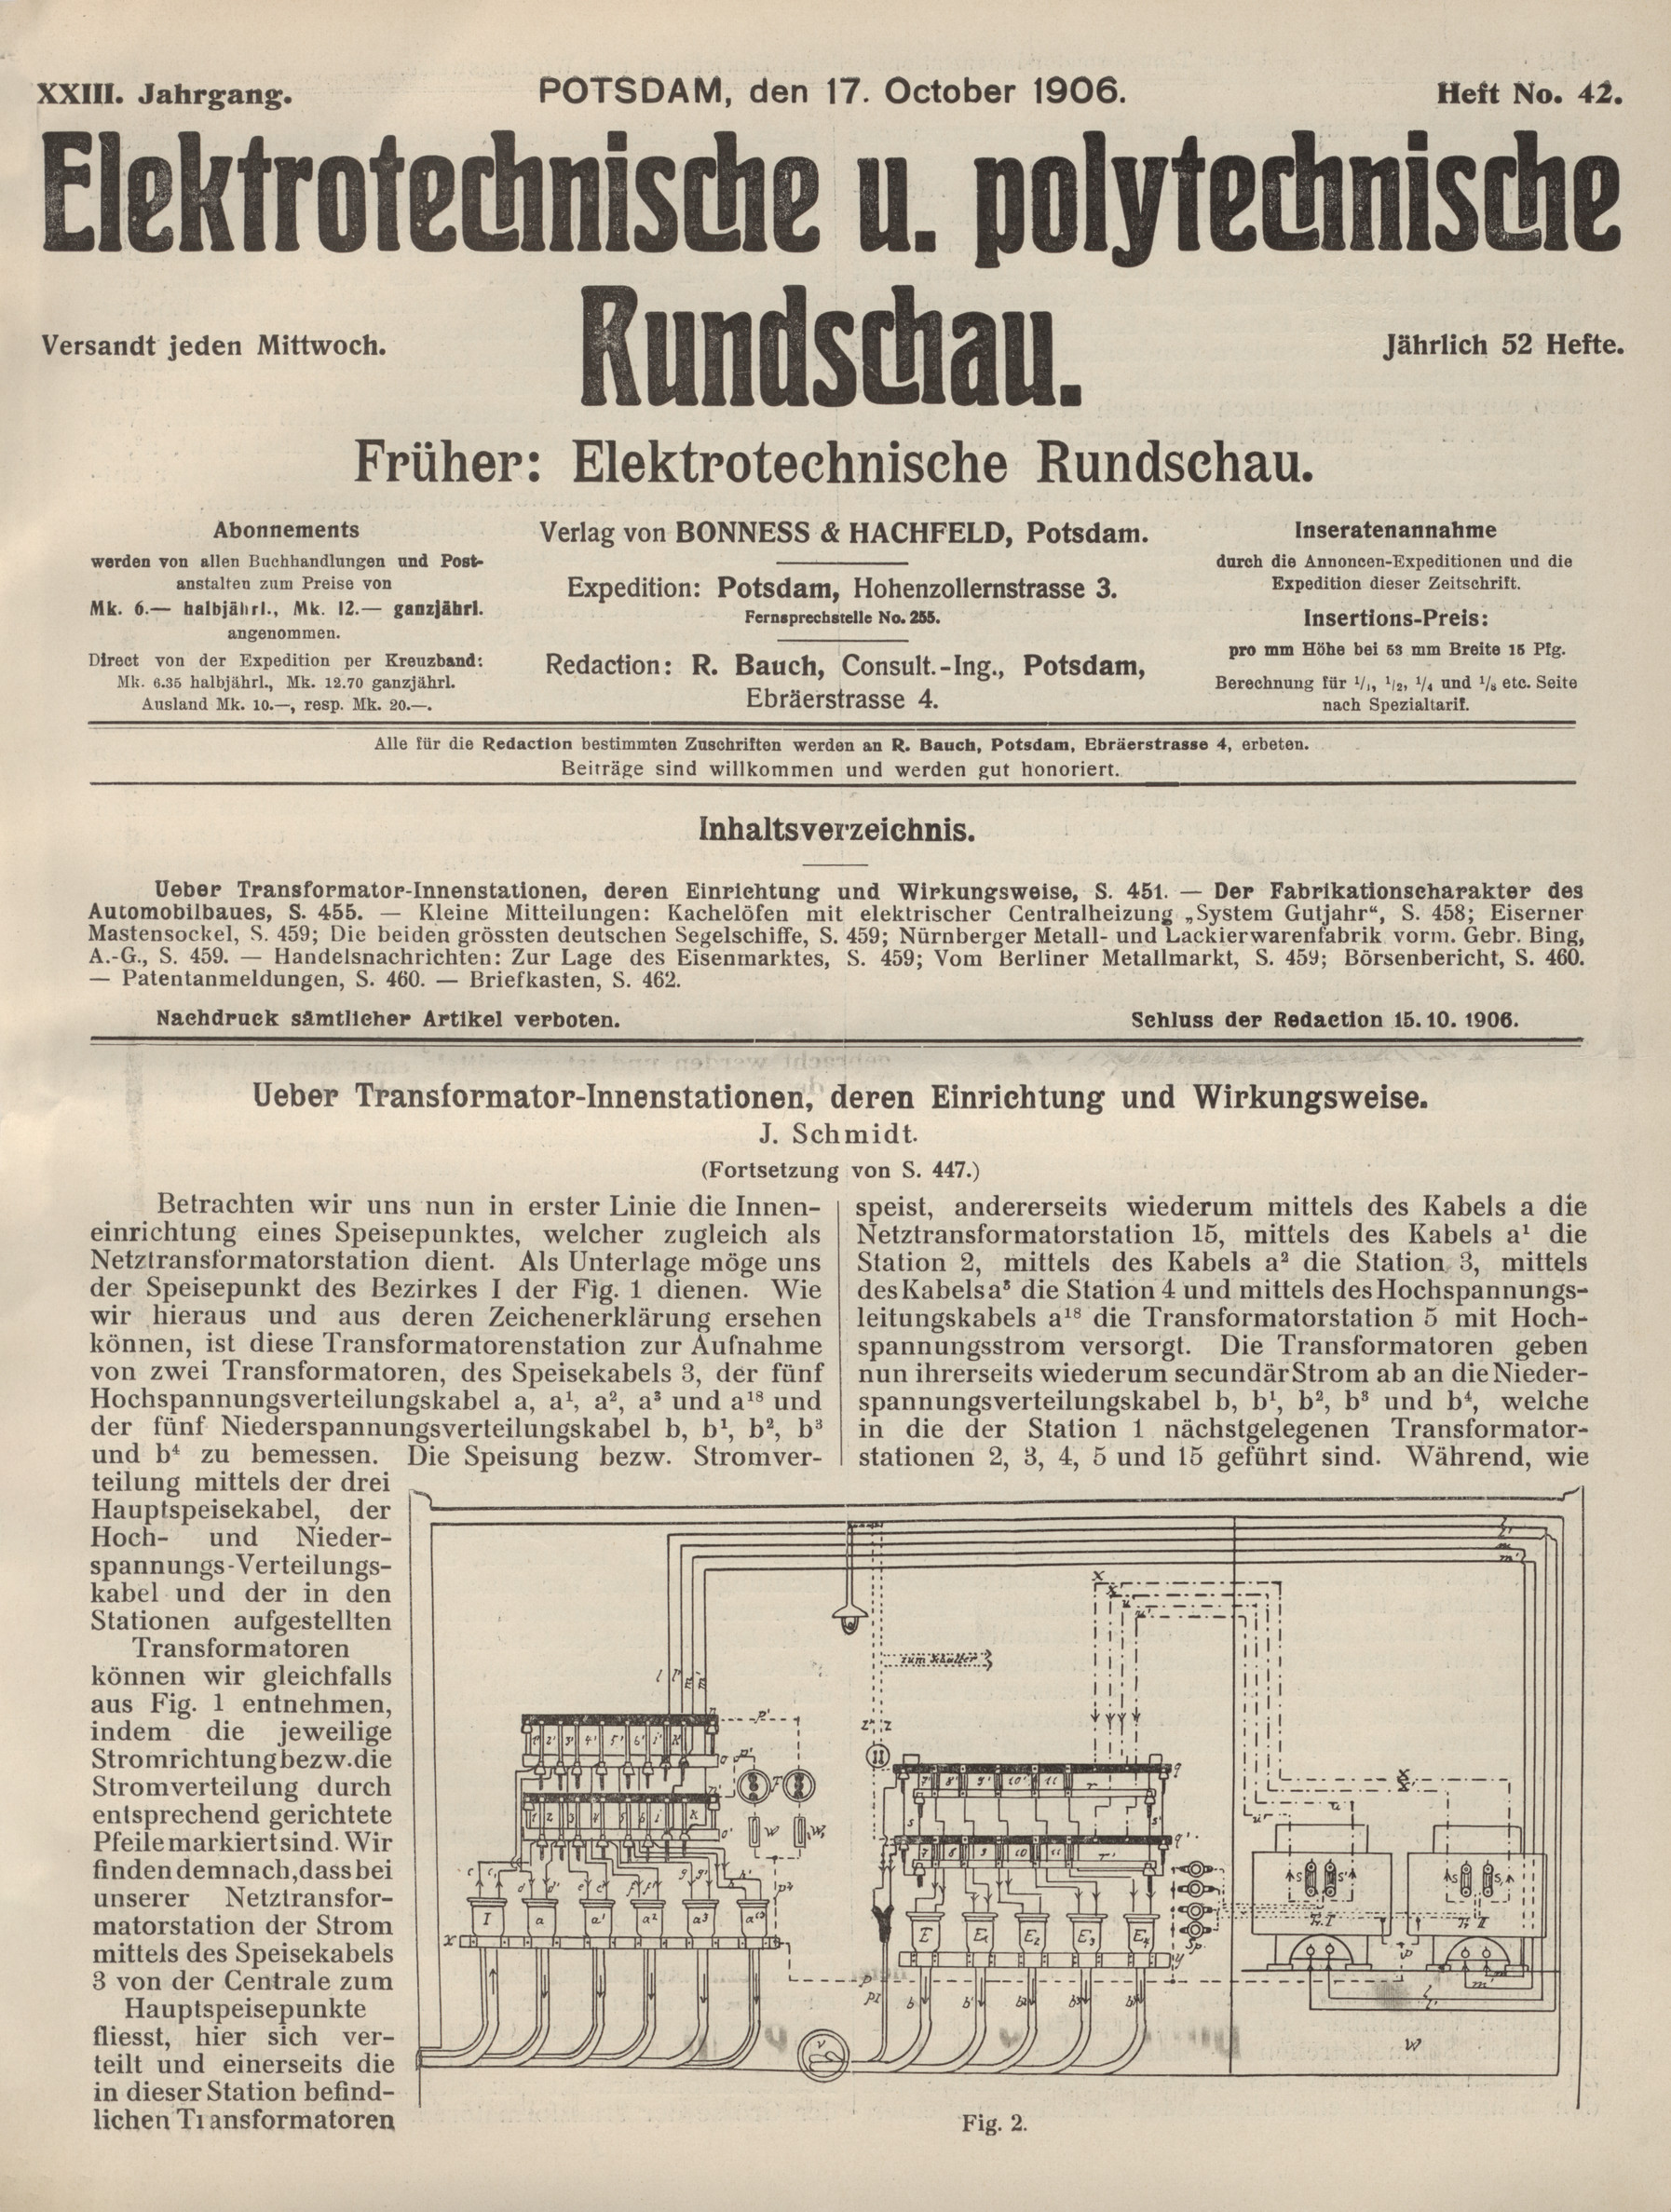 Elektrotechnische und polytechnische Rundschau, XXIII. Jahrgang, Heft No. 42